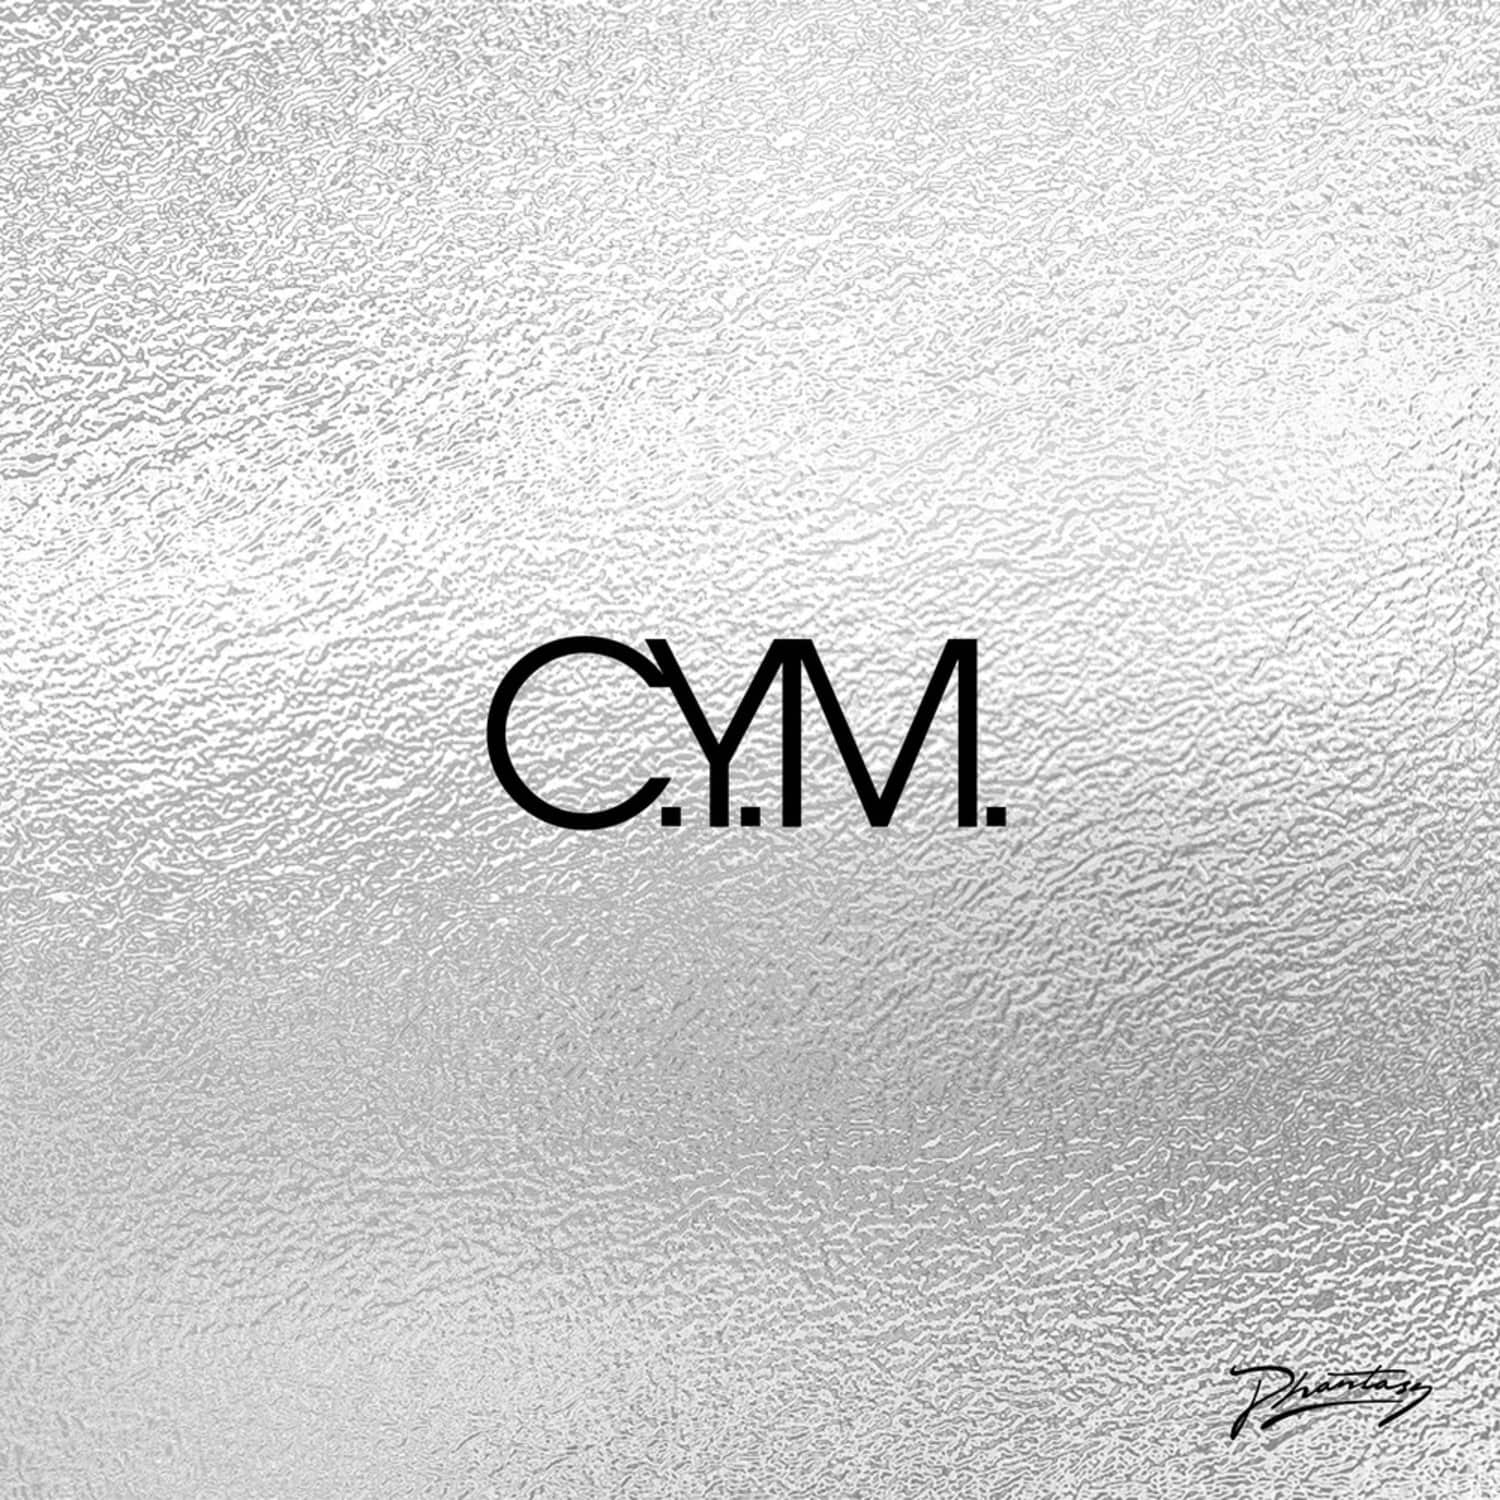 C.Y.M. - CAPRA